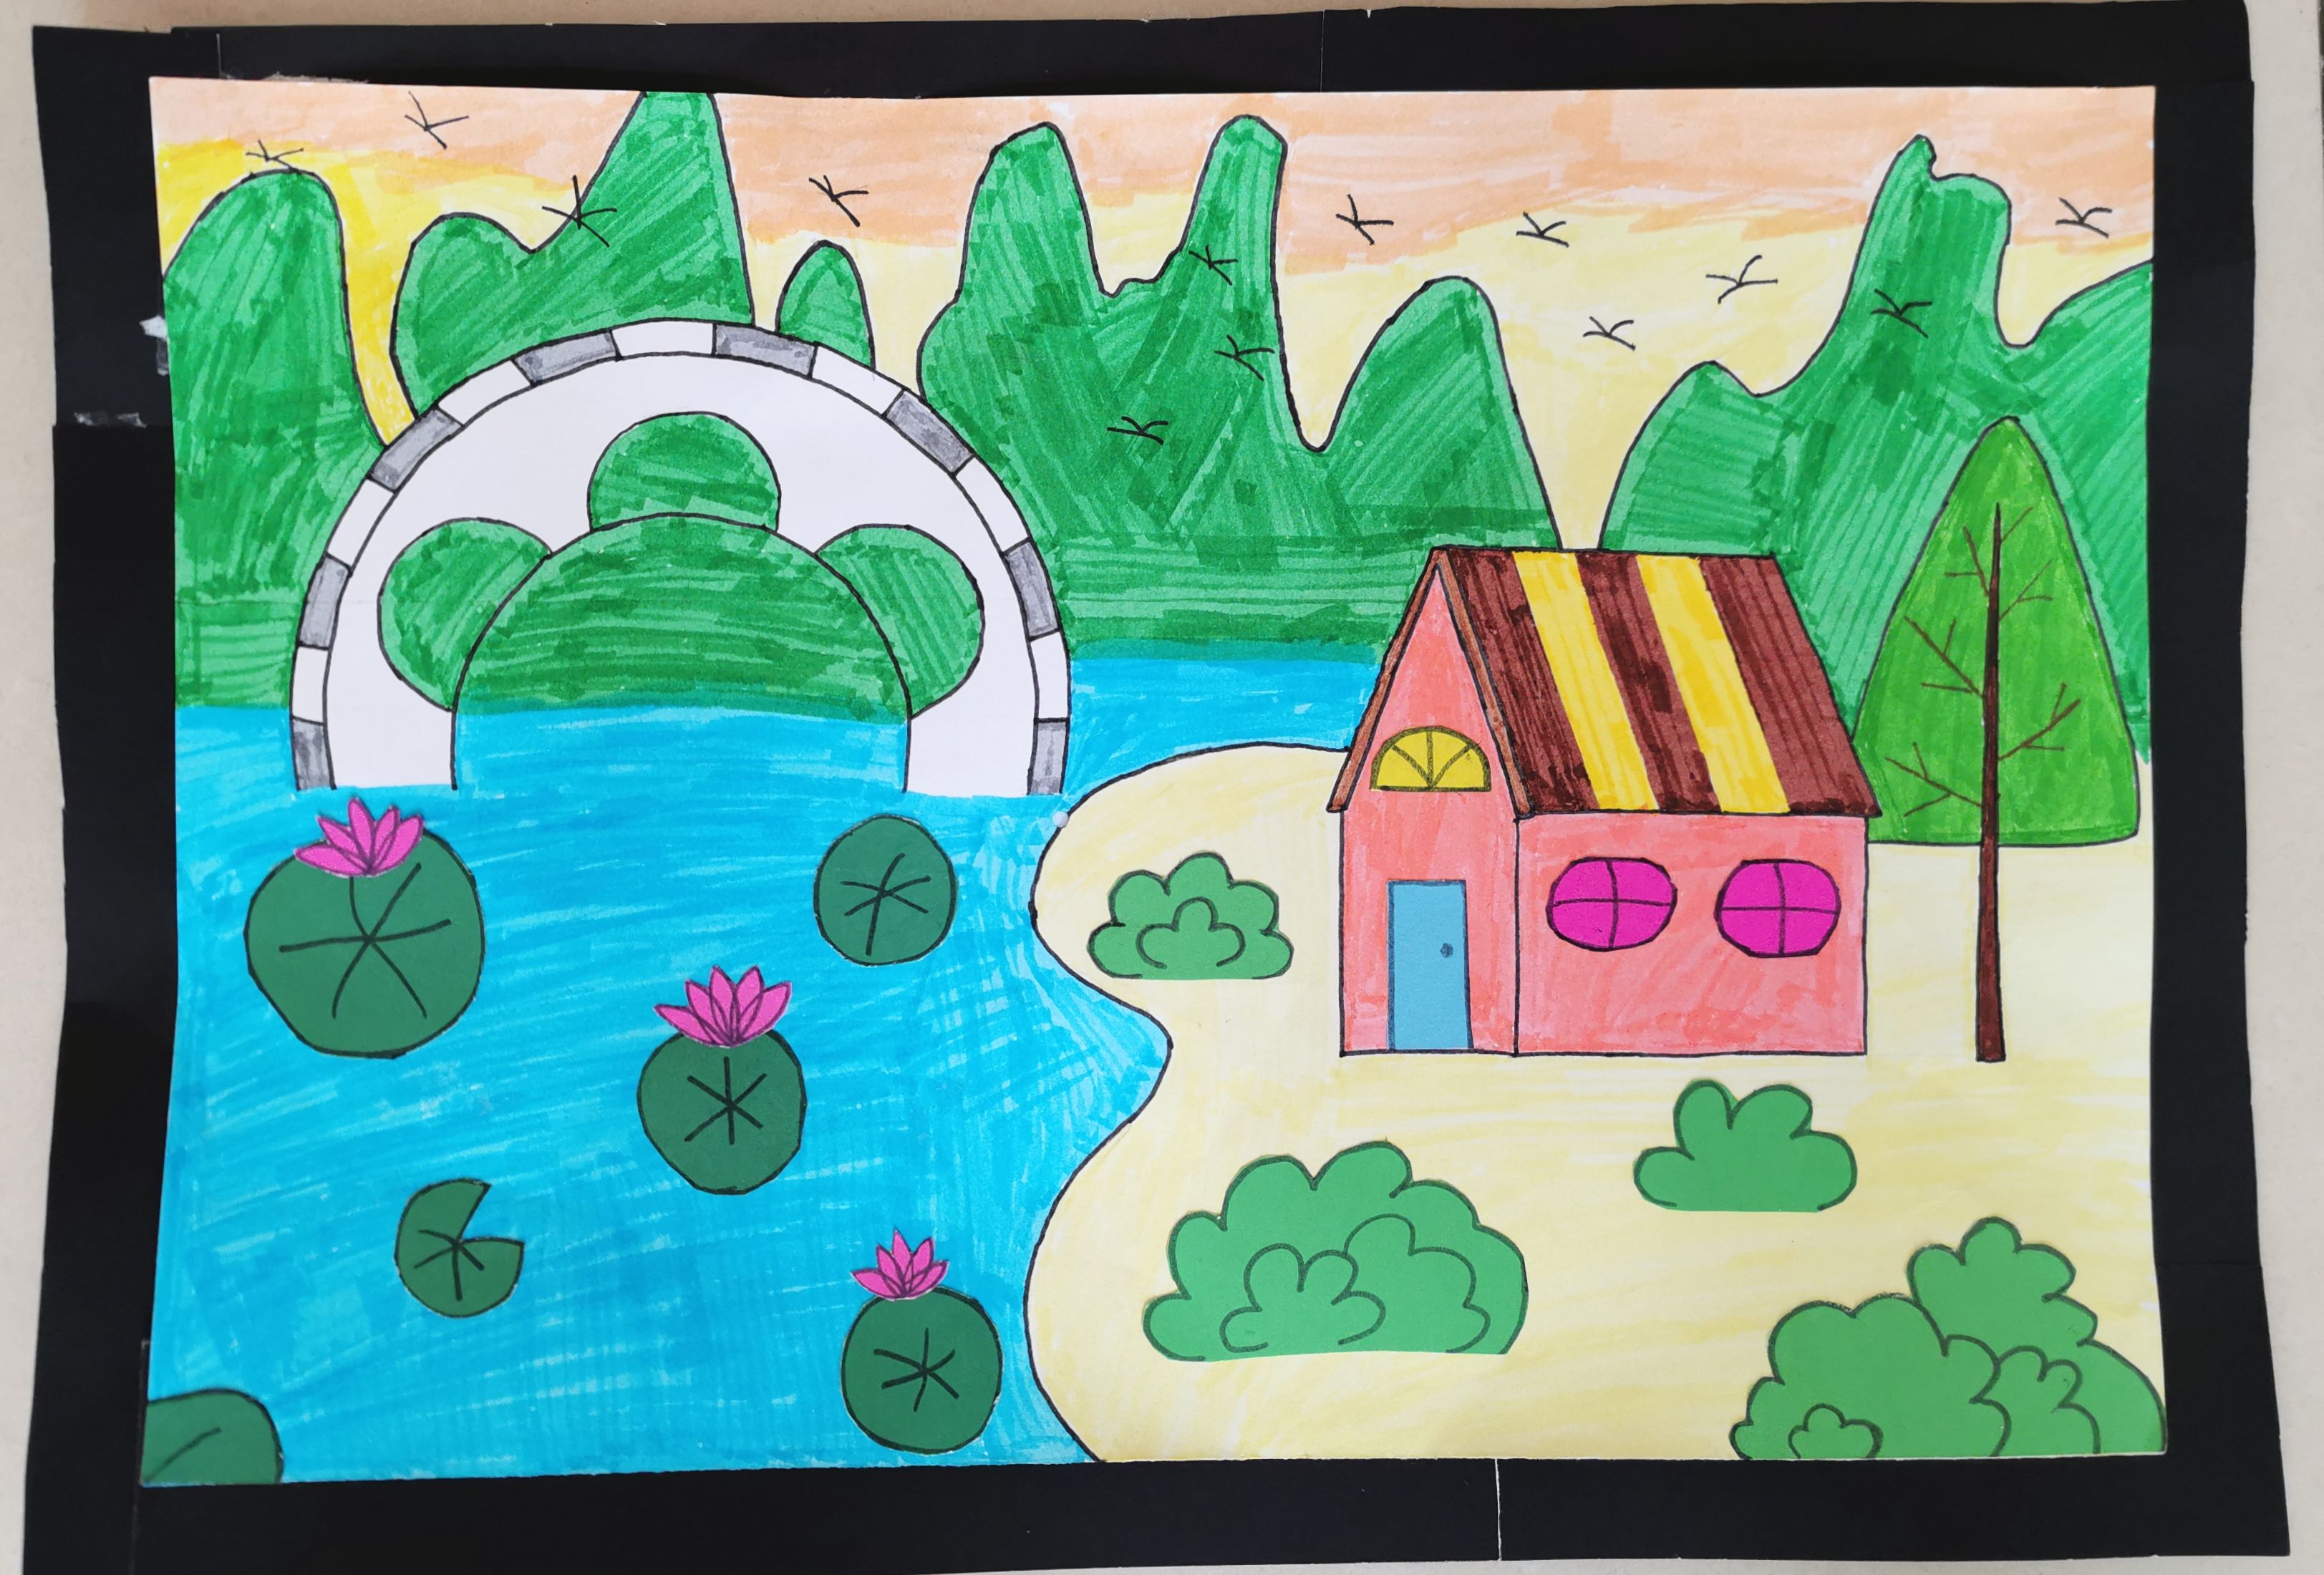 青山绿水儿童画比赛图片